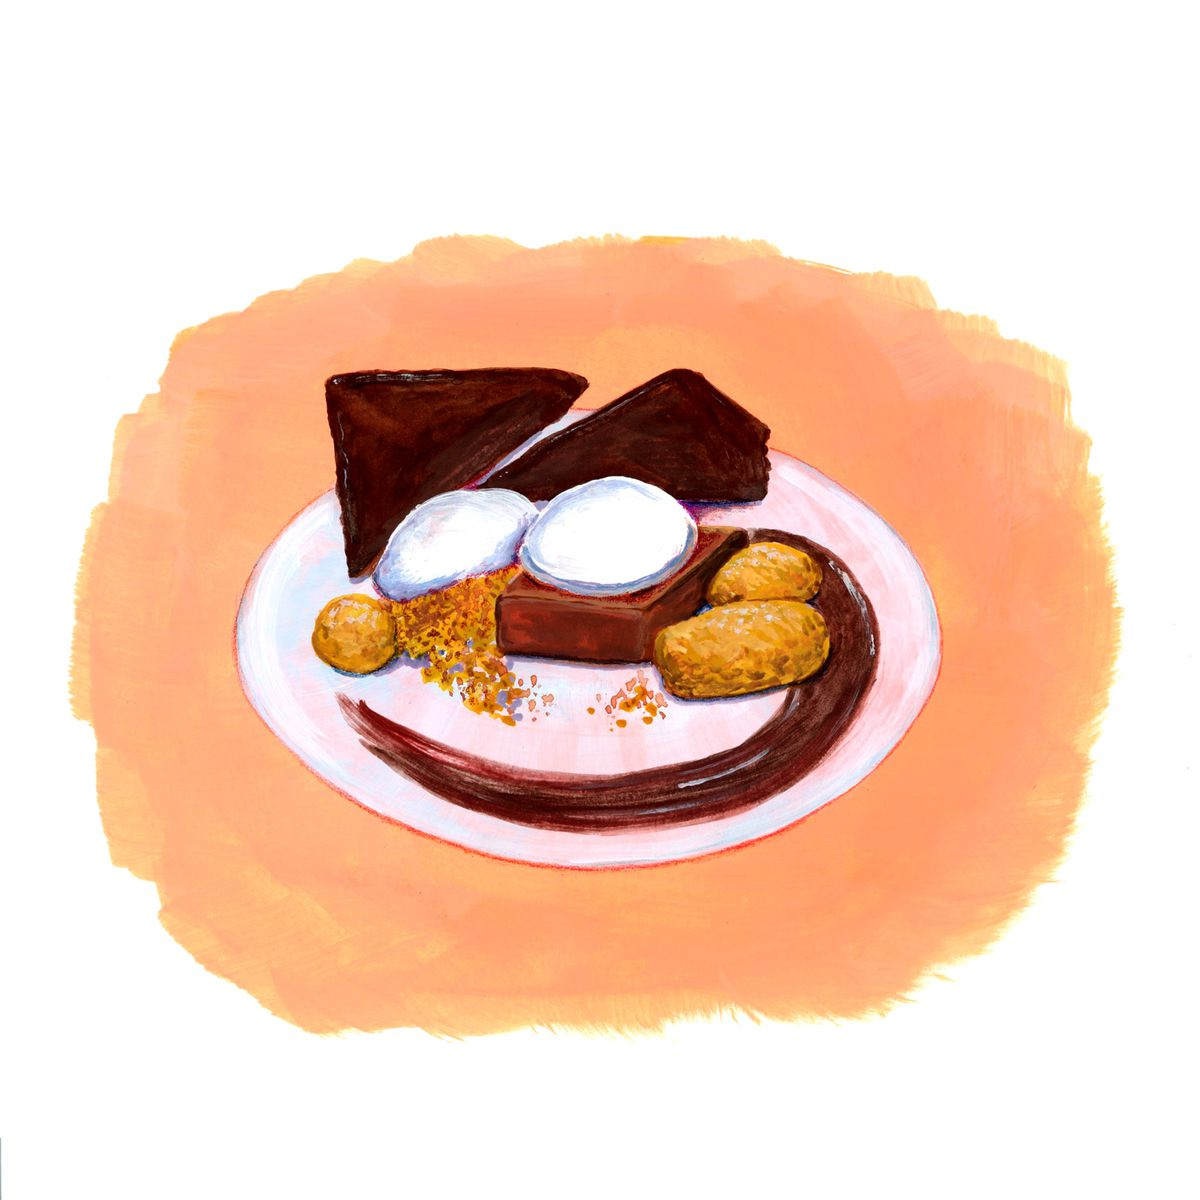 An illustration of a fancy dessert